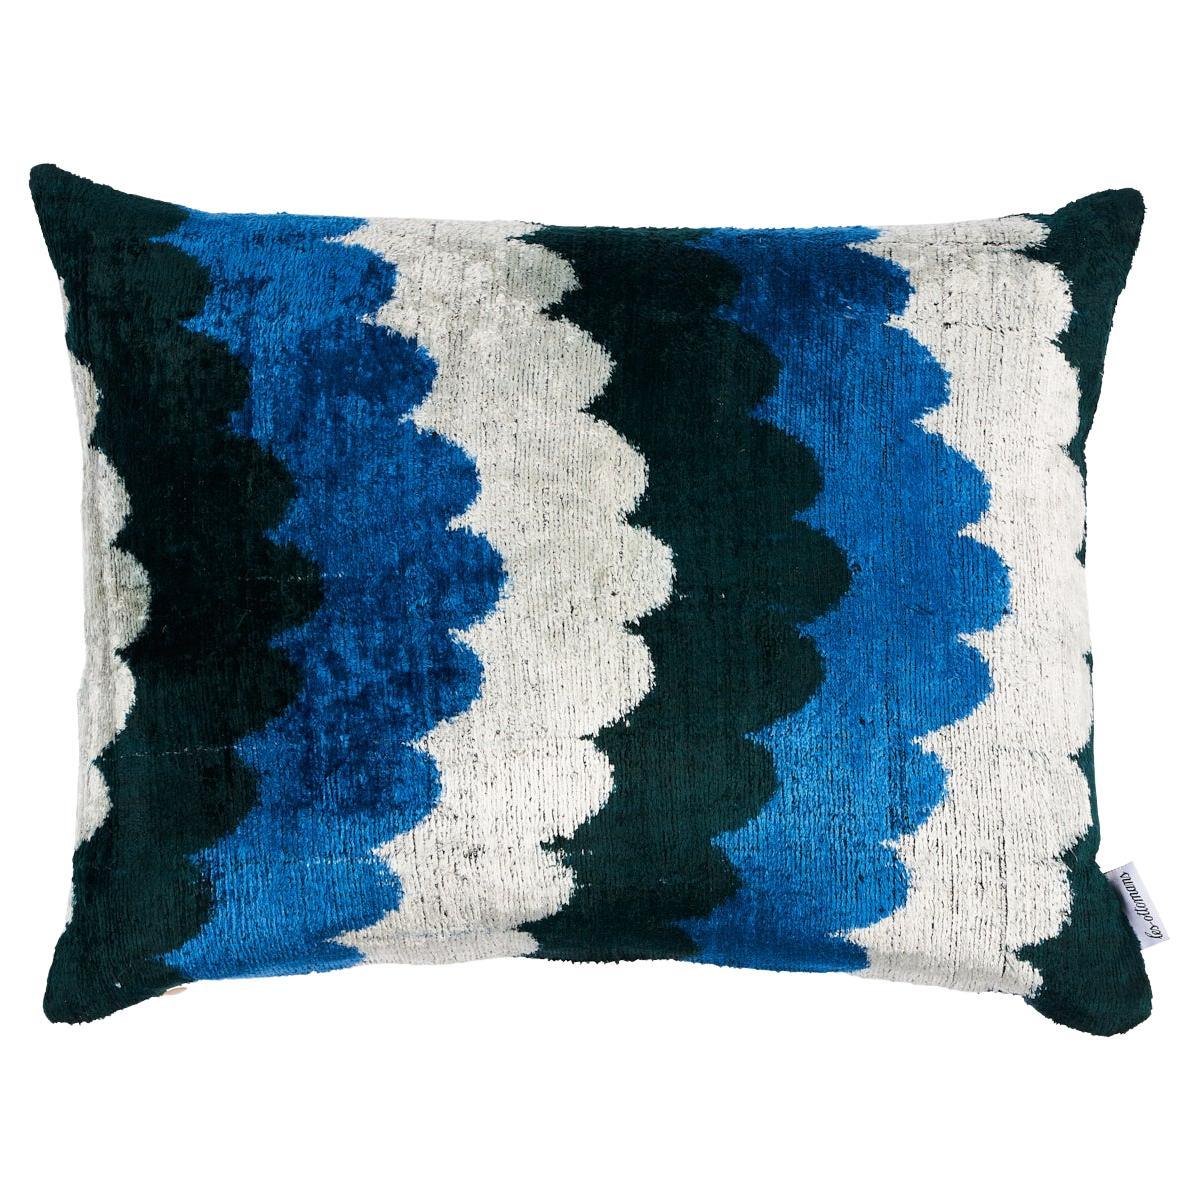 Schumacher Samsun Silk Velvet in Blue & Green 20 x 16" Pillow